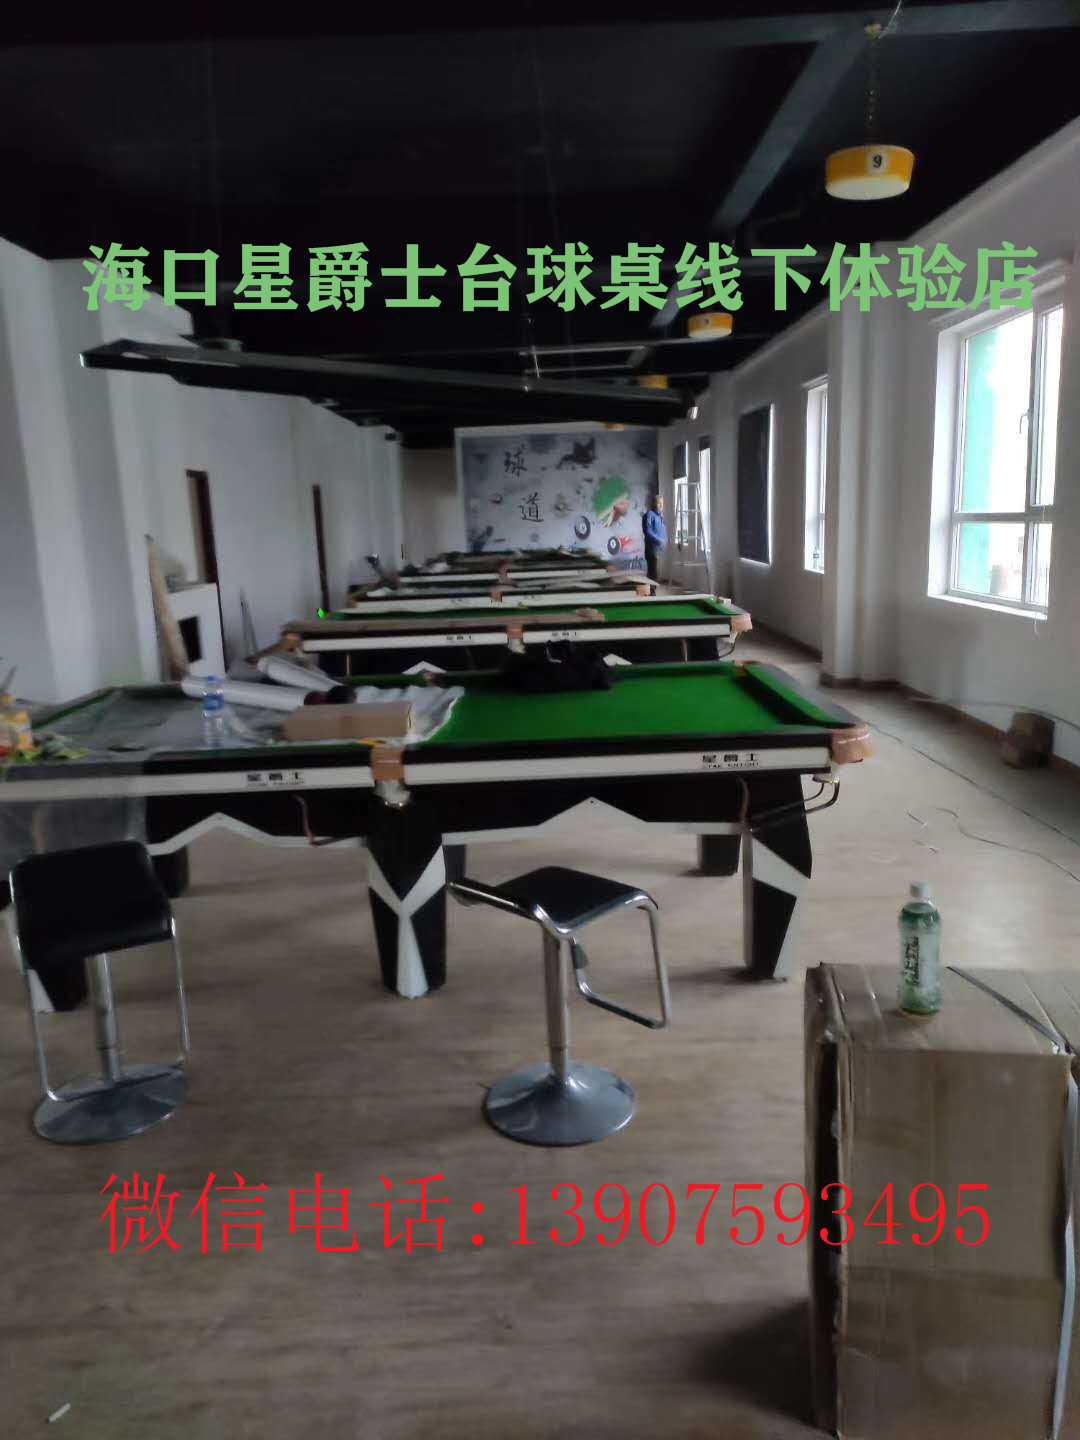 换台布 海南省桌球器材厂家批发 台球桌拆装 台球桌维修 更换台呢3